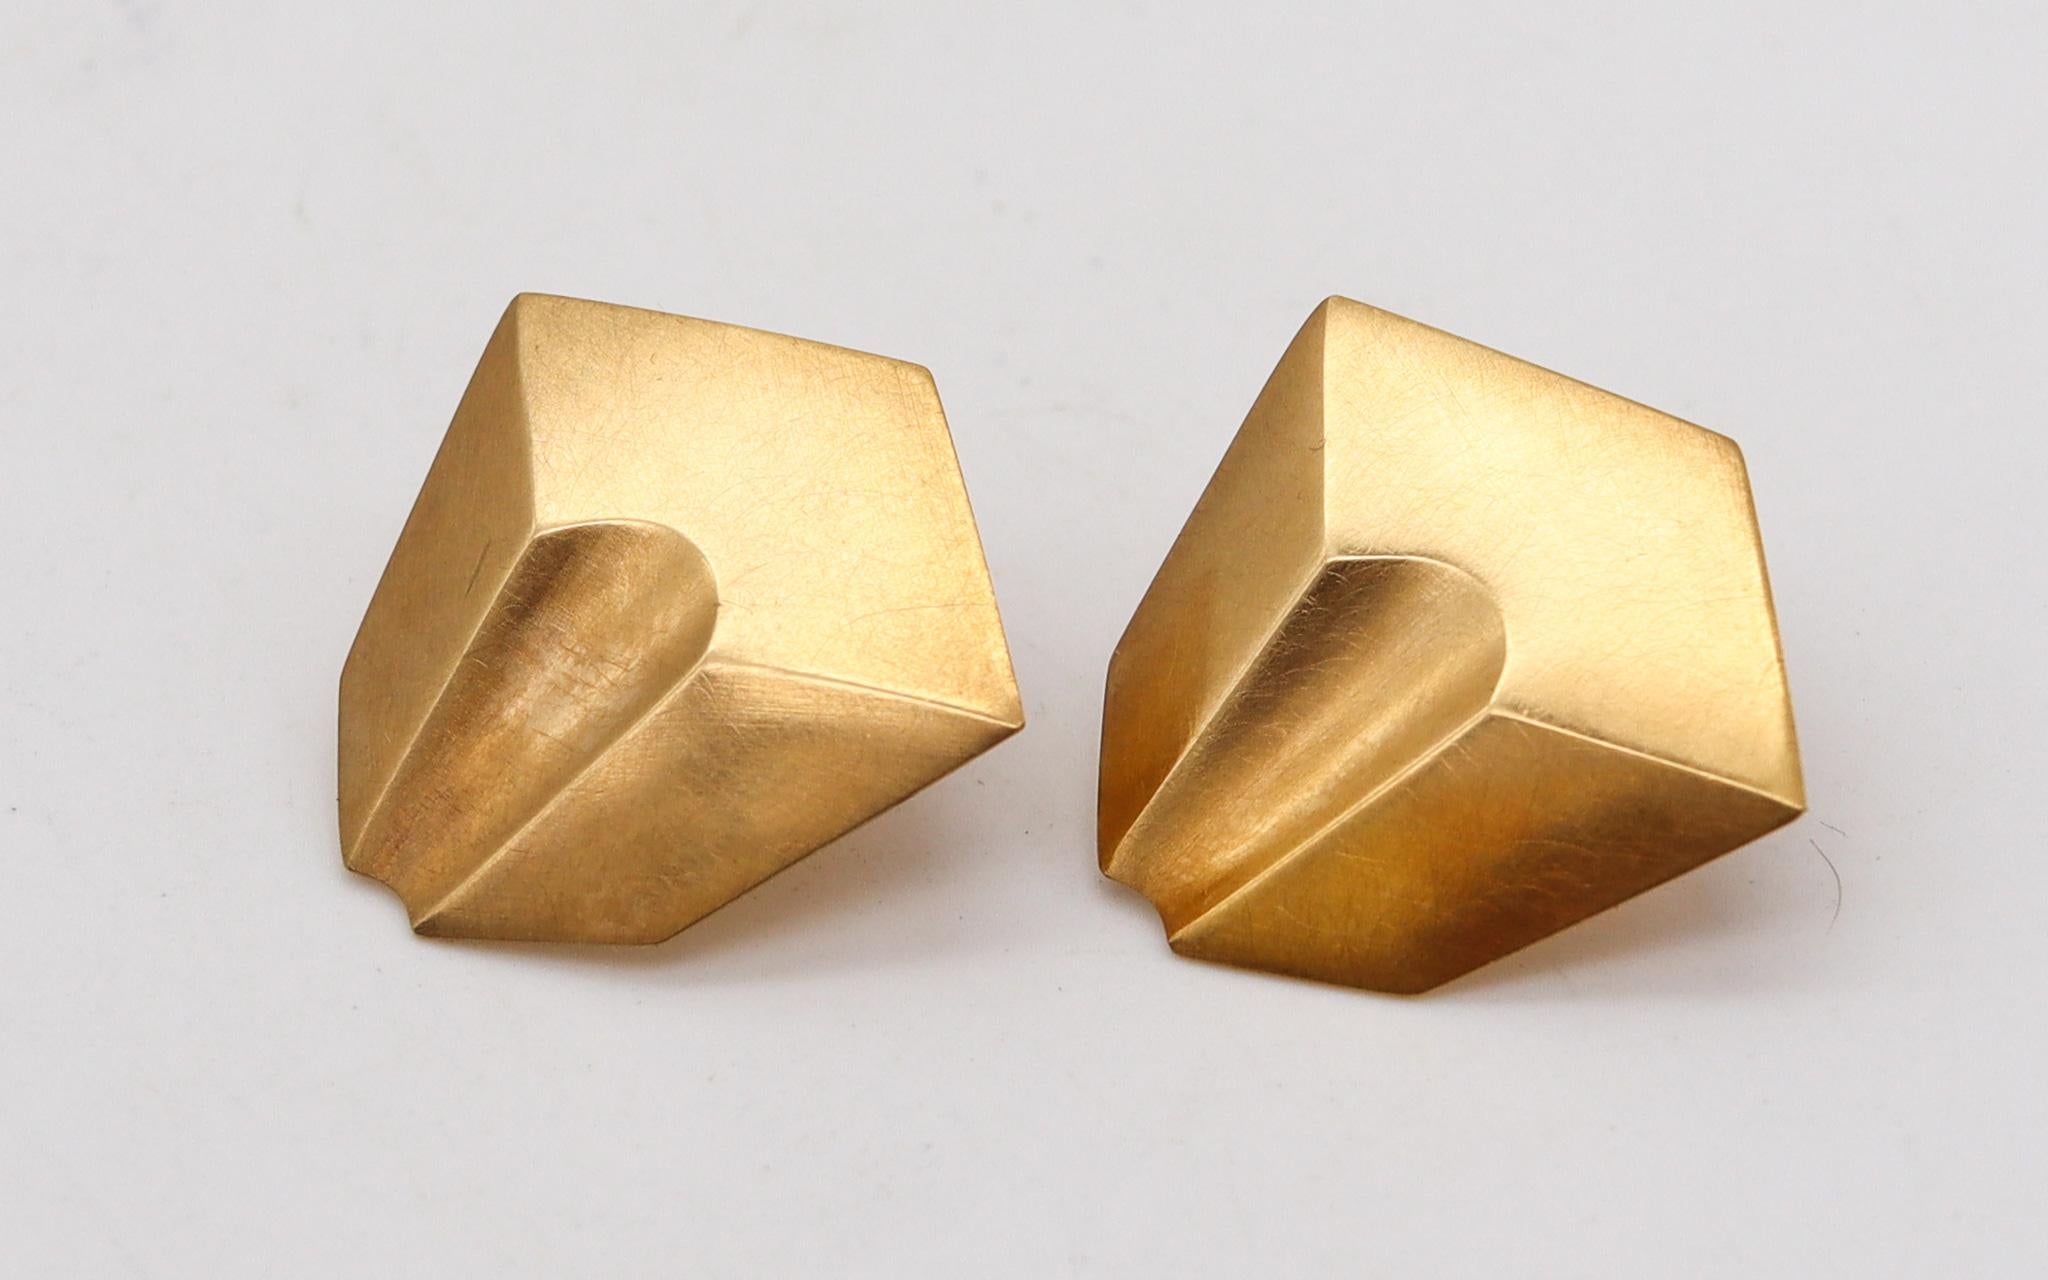 Trompe L'Oeil-Ohrringe von Françoise und Claude Chavent (1947-)

Wunderschöne Vintage-Ohrringe, die von den Künstlern und Goldschmieden Francoise und Claude Chavent in den 1980er Jahren in Montpellier (Frankreich) geschaffen wurden. Dieses